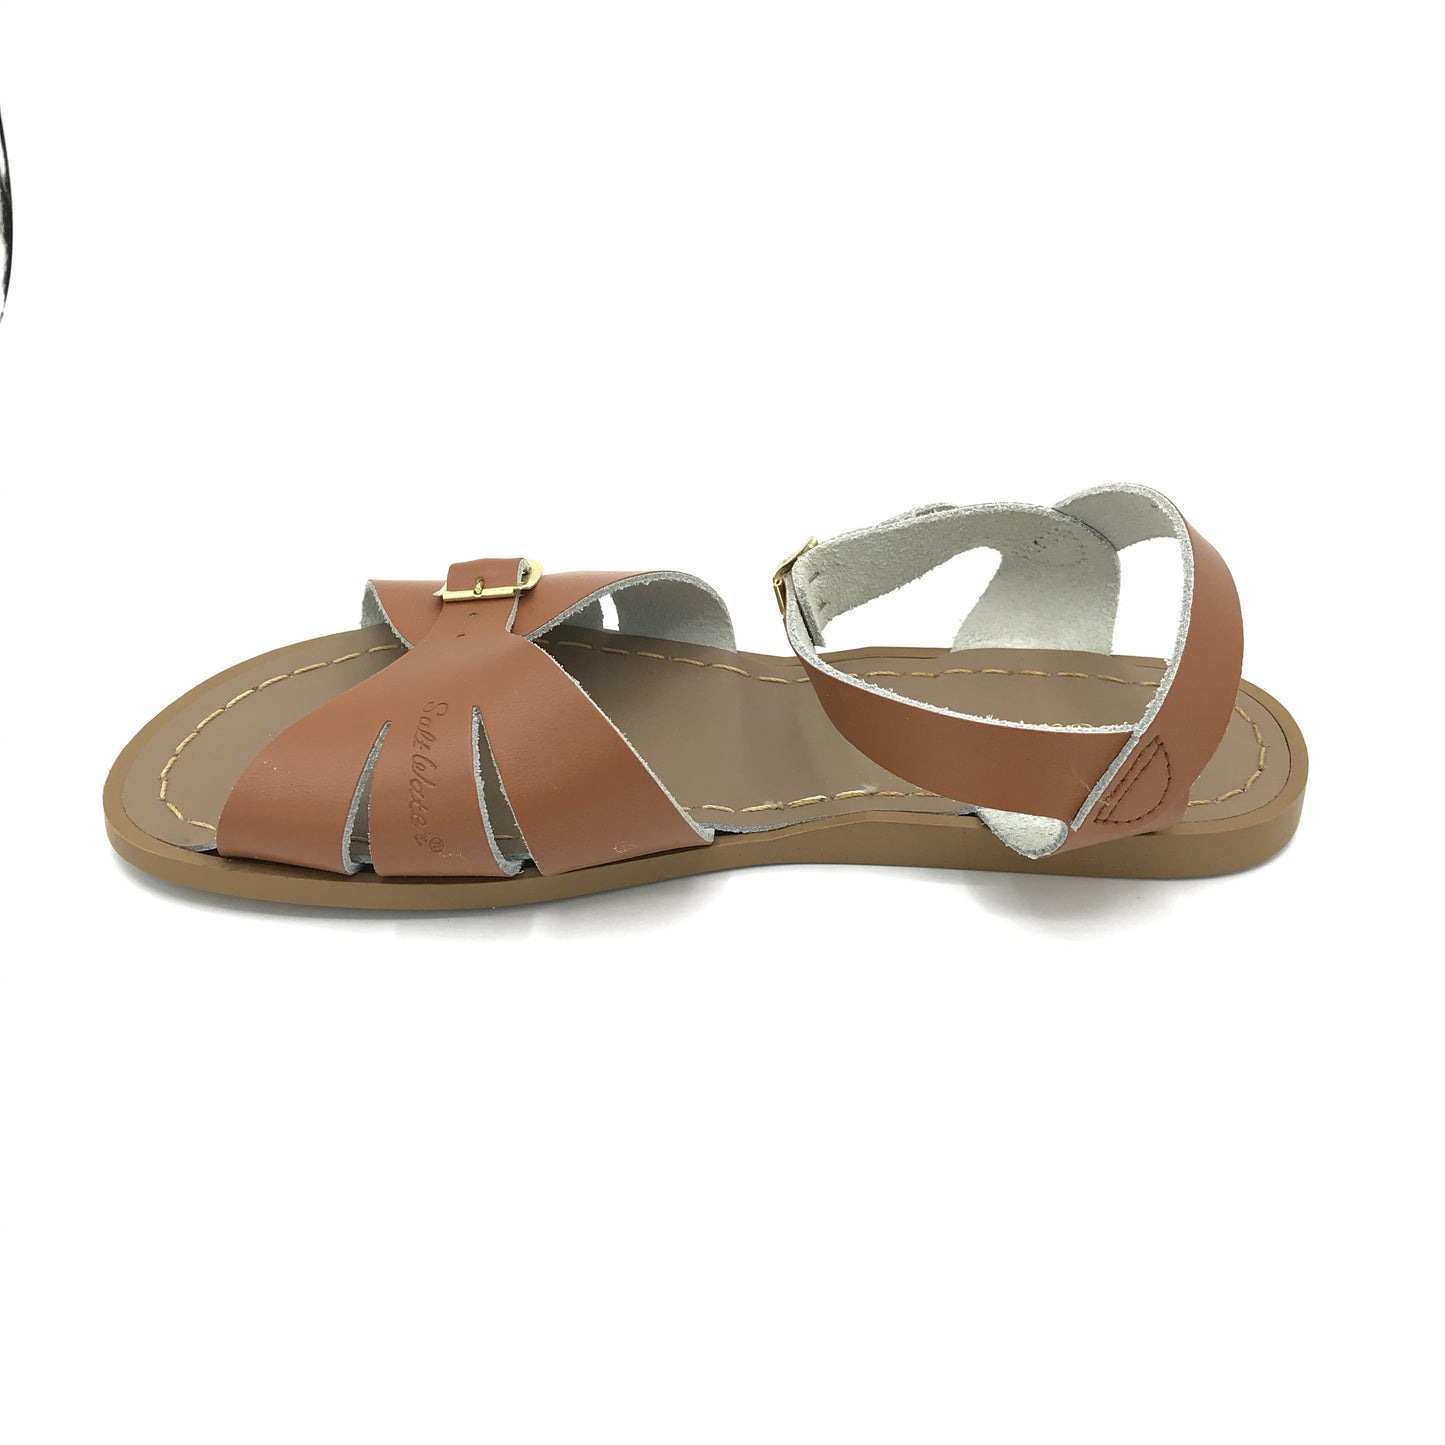 Tan Classic Sandals - Imeldas Shoes Norwich